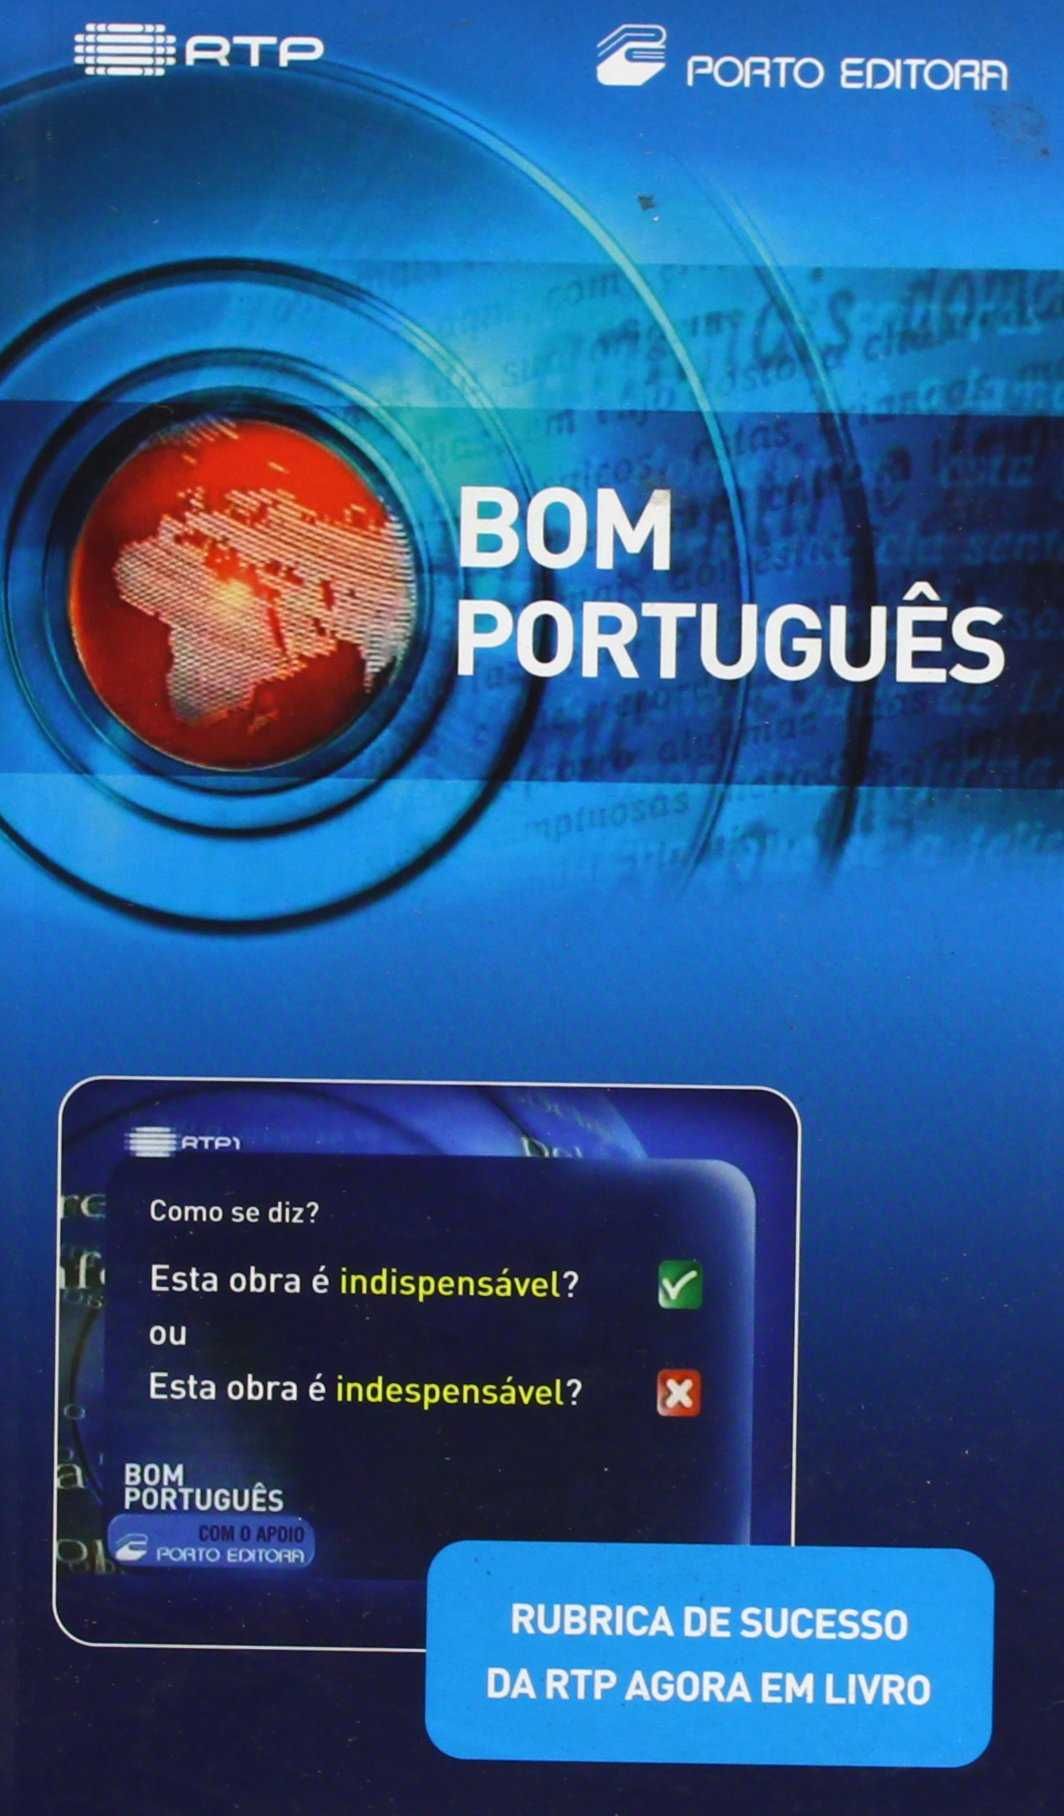 Bom Português - rubrica de sucesso da RTP agora em livro